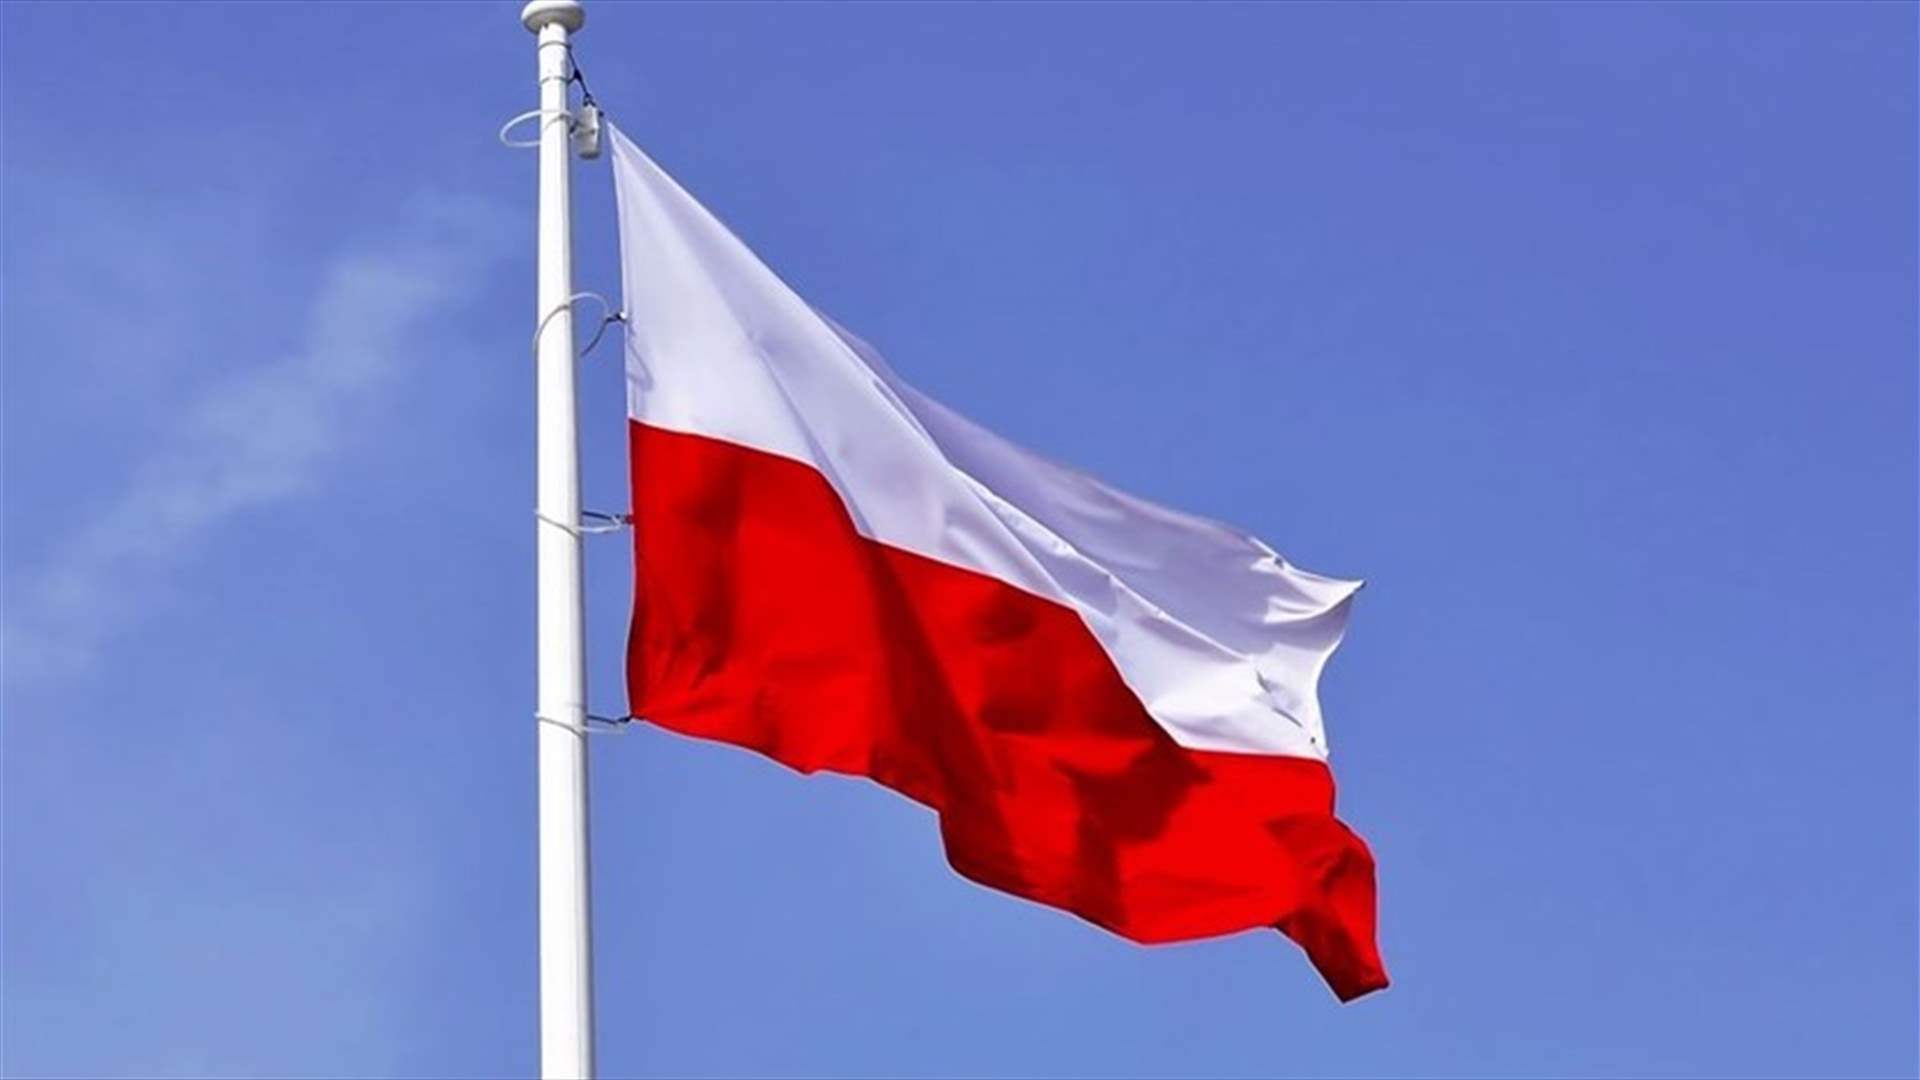 بولندا تعلن عزمها تعزيز وجودها العسكري على الحدود مع روسيا وبيلاروسيا